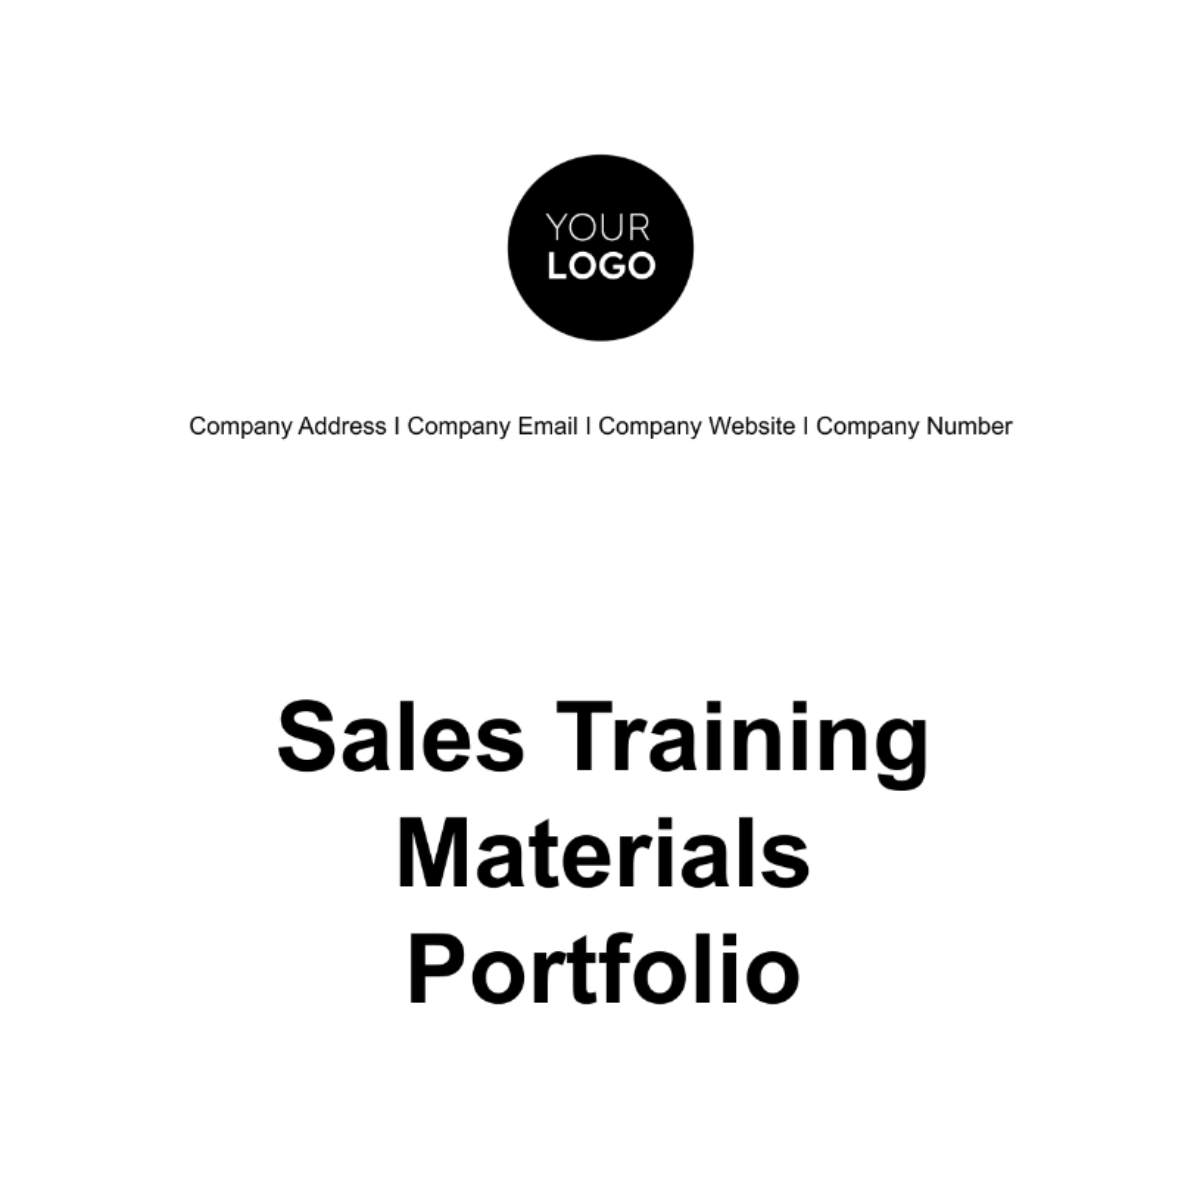 Free Sales Training Materials Portfolio Template